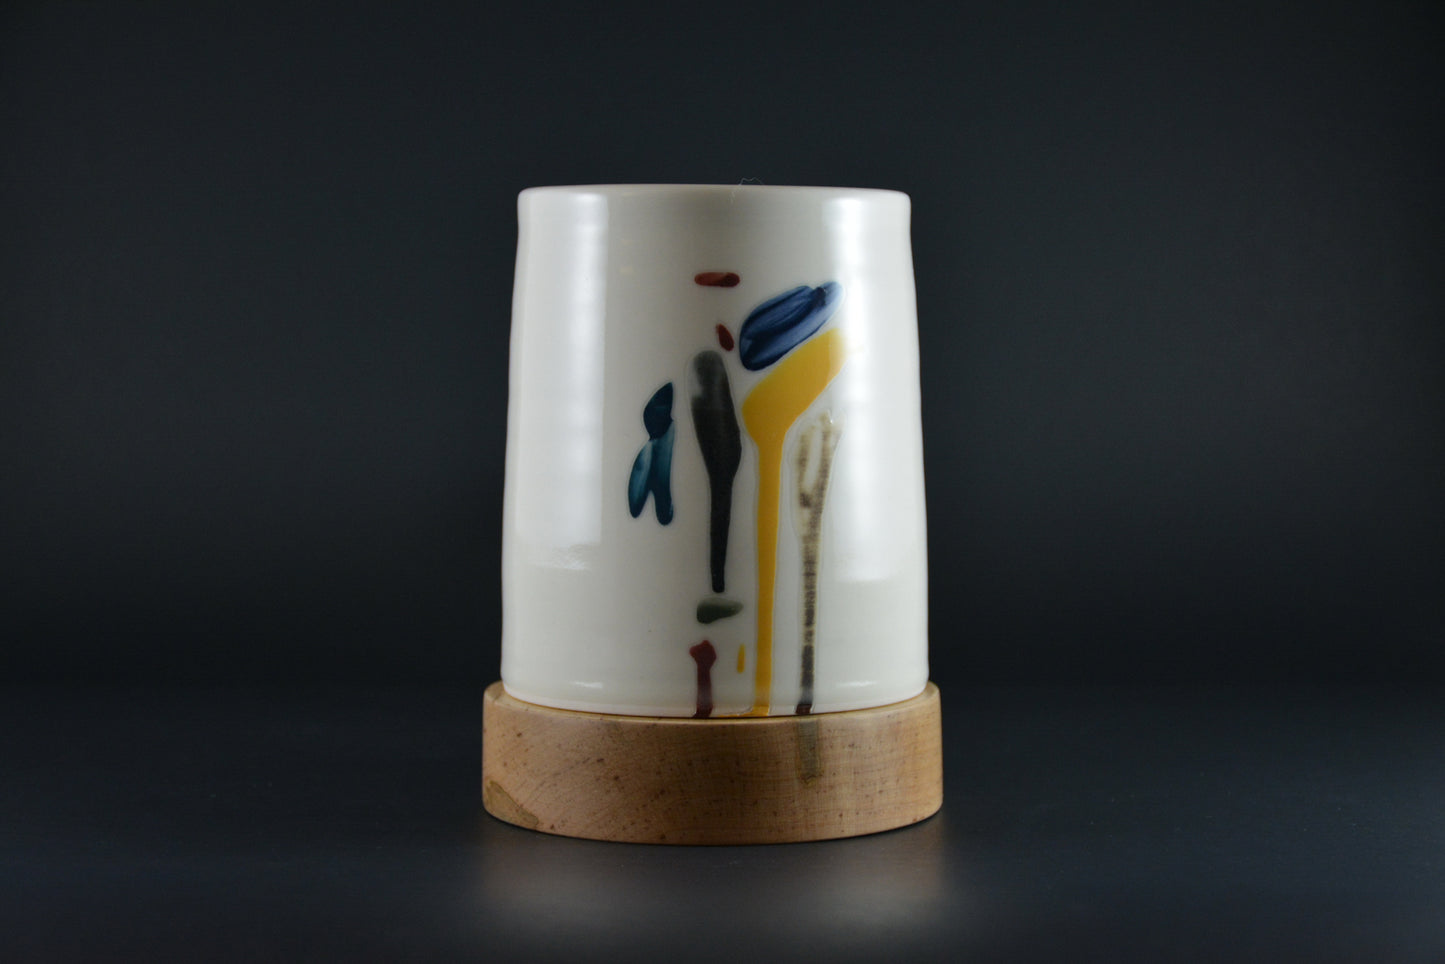 LP-01 Ceramic and wood Lamp - Lampe porcelaine et bois tourné